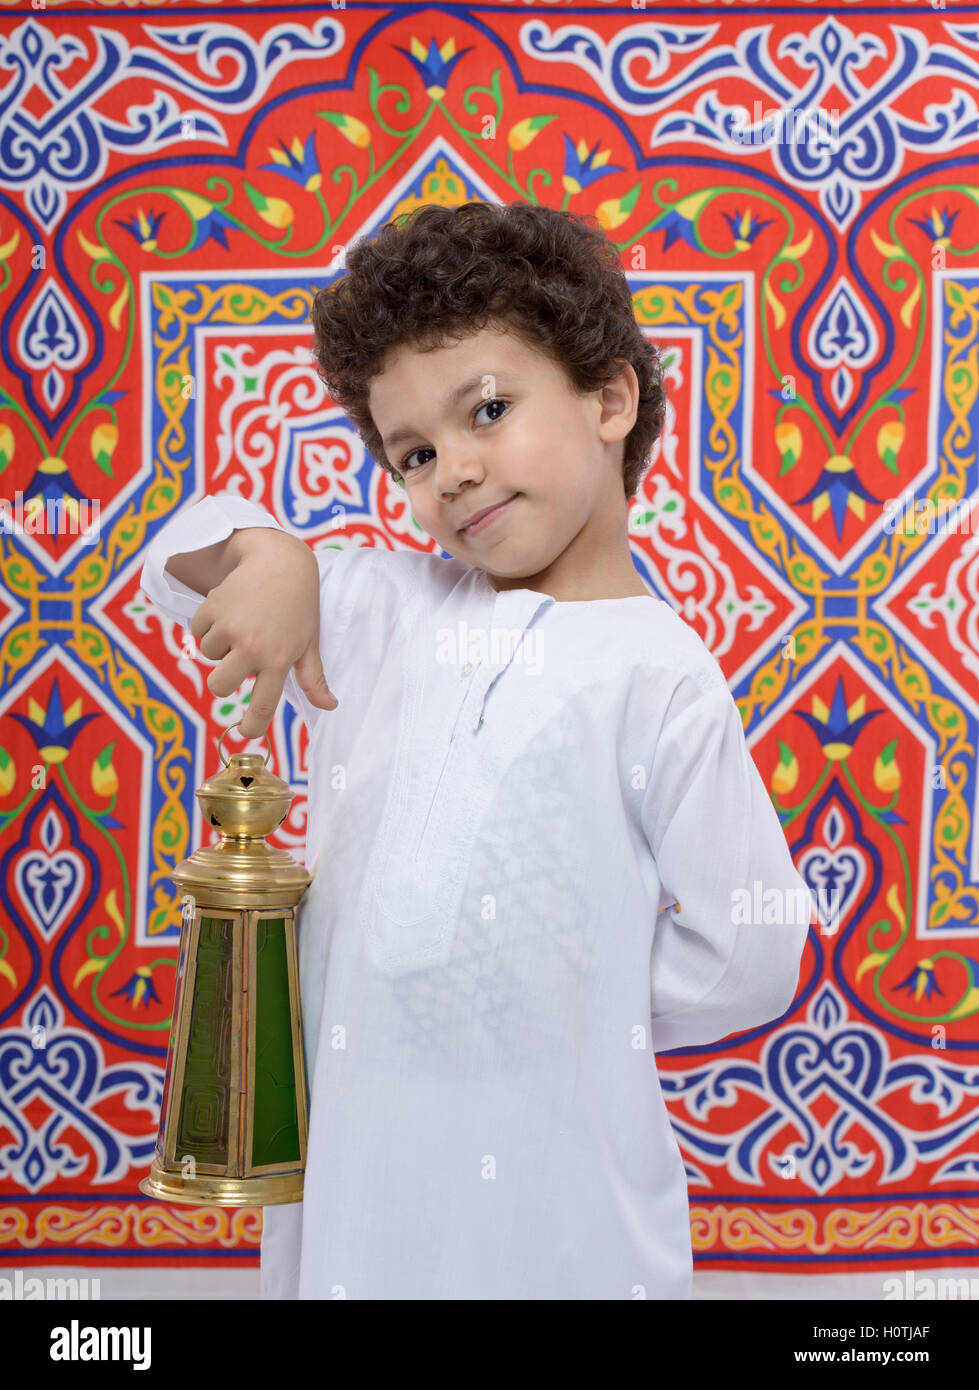 Arabian Happy Smiling Boy with Lantern célébrant le Ramadan Banque D'Images